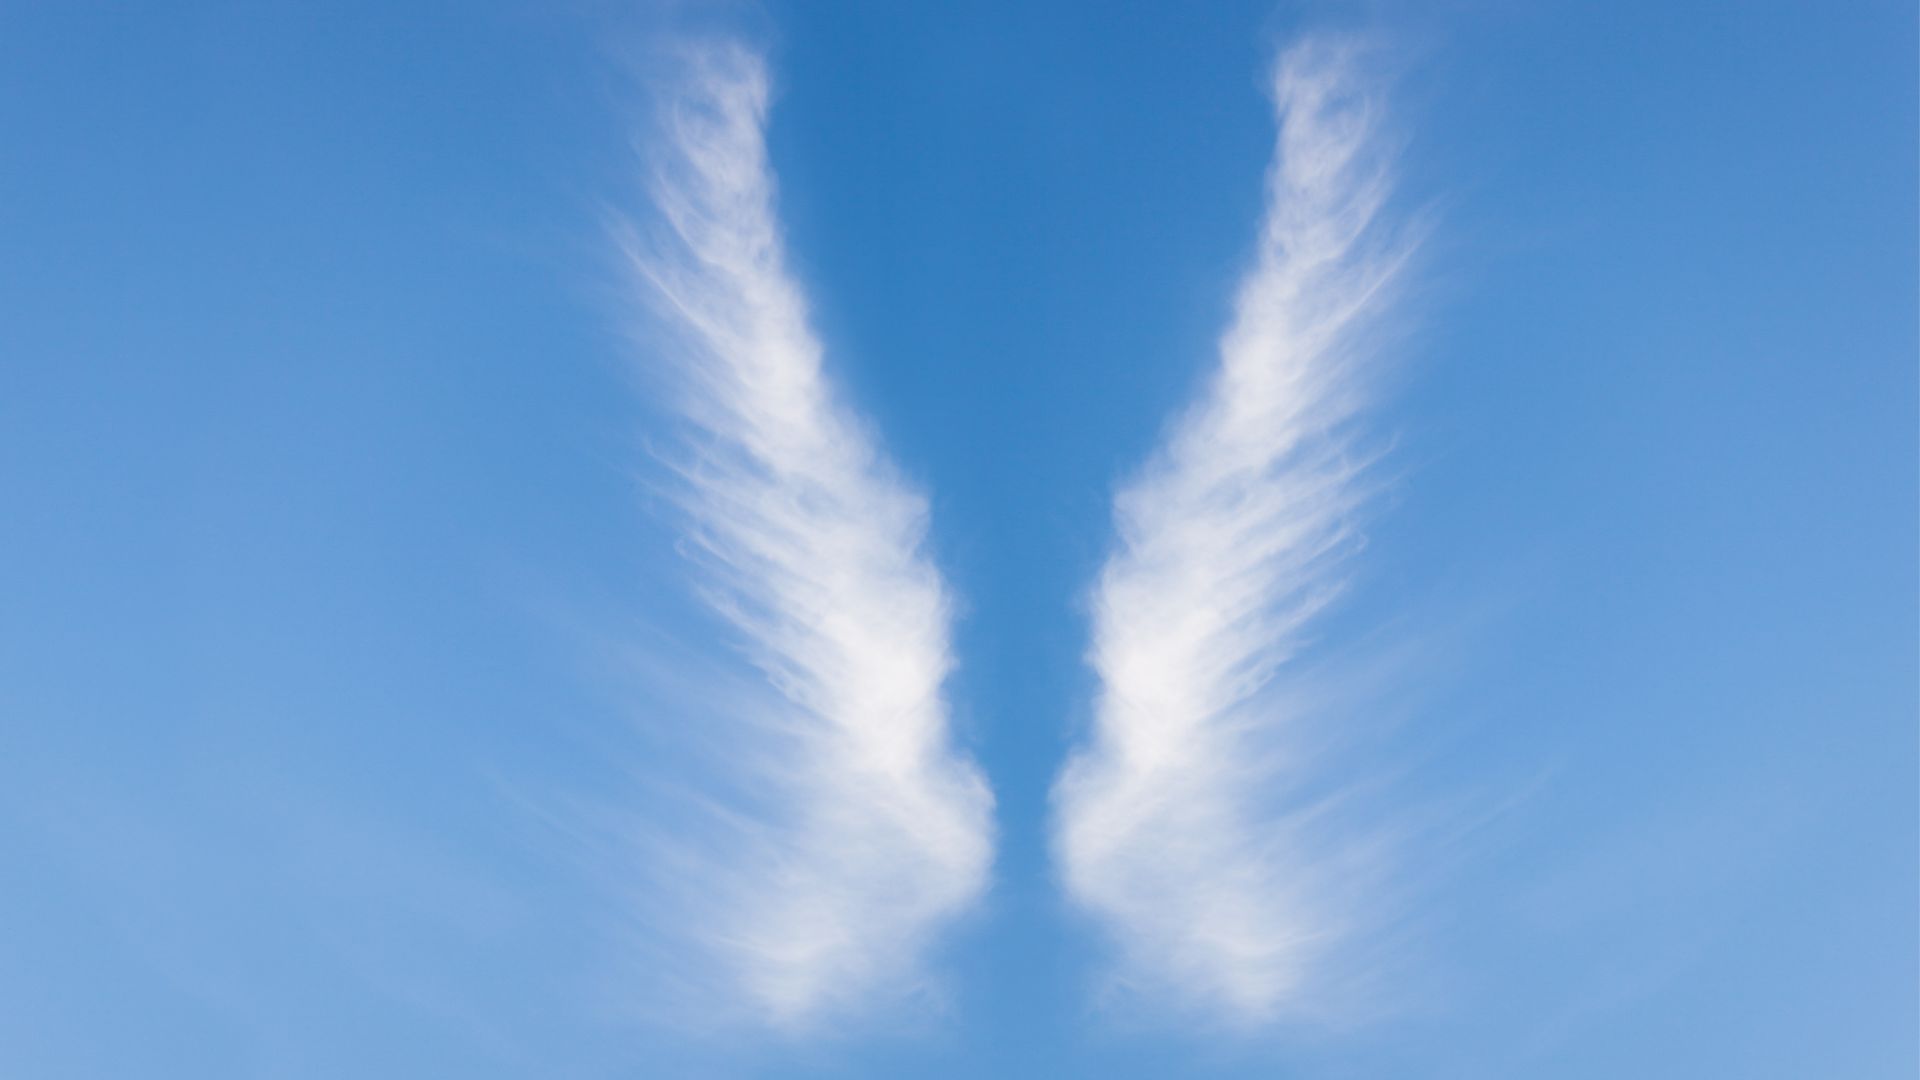 Les nuages cirrus prennent des formes extraordinaires et il est parfois difficile de savoir si le cliché a été retouché par un logiciel.&nbsp;© Canva